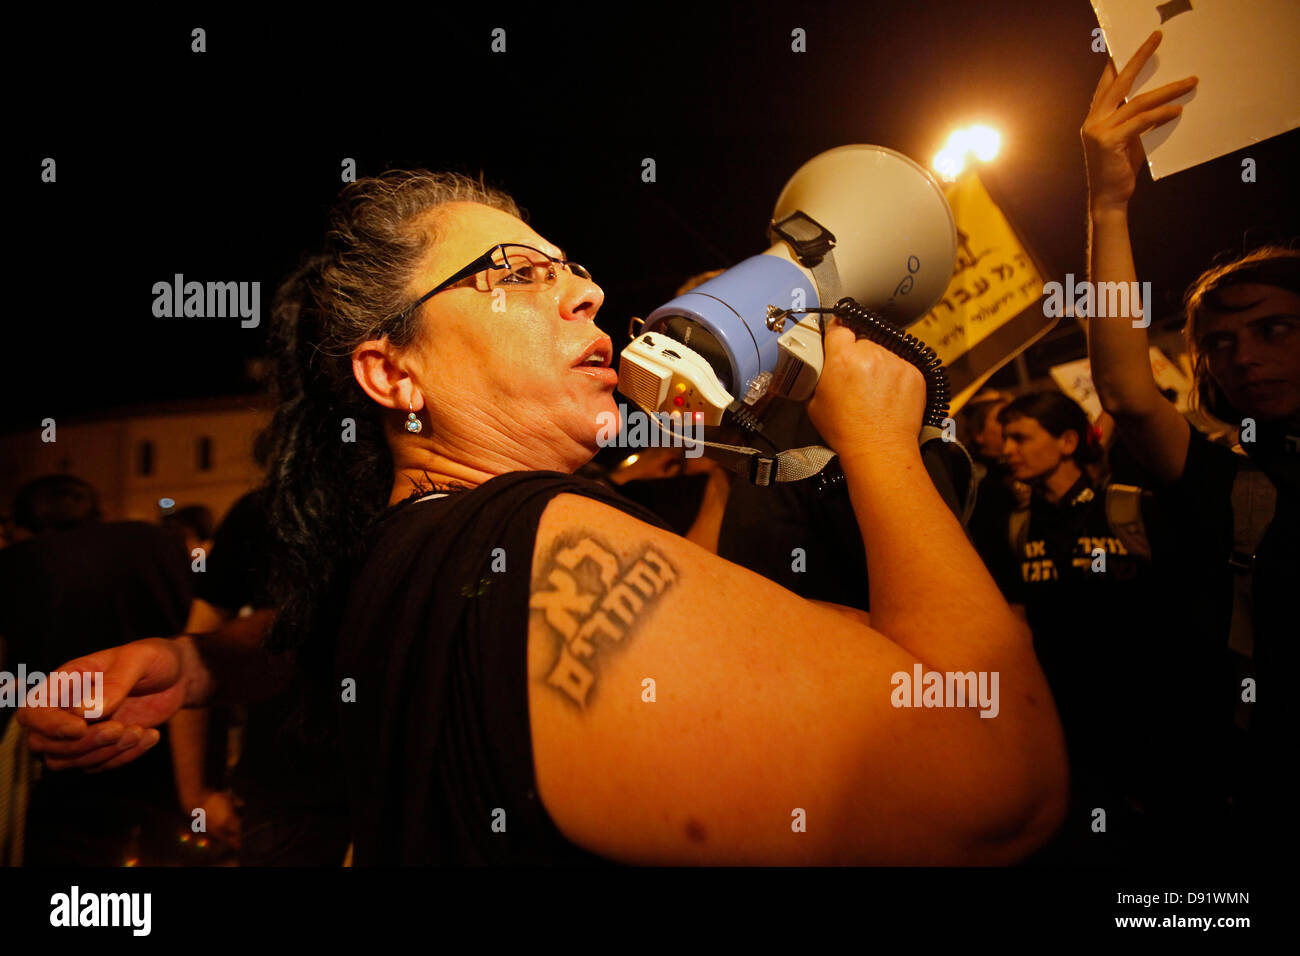 Eine Demonstrantin mit einem hebräischen Schriftstück in ihrem Arm, das "nicht Nizza" lautet, ruft bei einer Kundgebung gegen eine umstrittene Vereinbarung zwischen der Regierung und großen Energieunternehmen über die Erdgasproduktion, West-Jerusalem Israel, gegen Netanjahu-Slogans Stockfoto